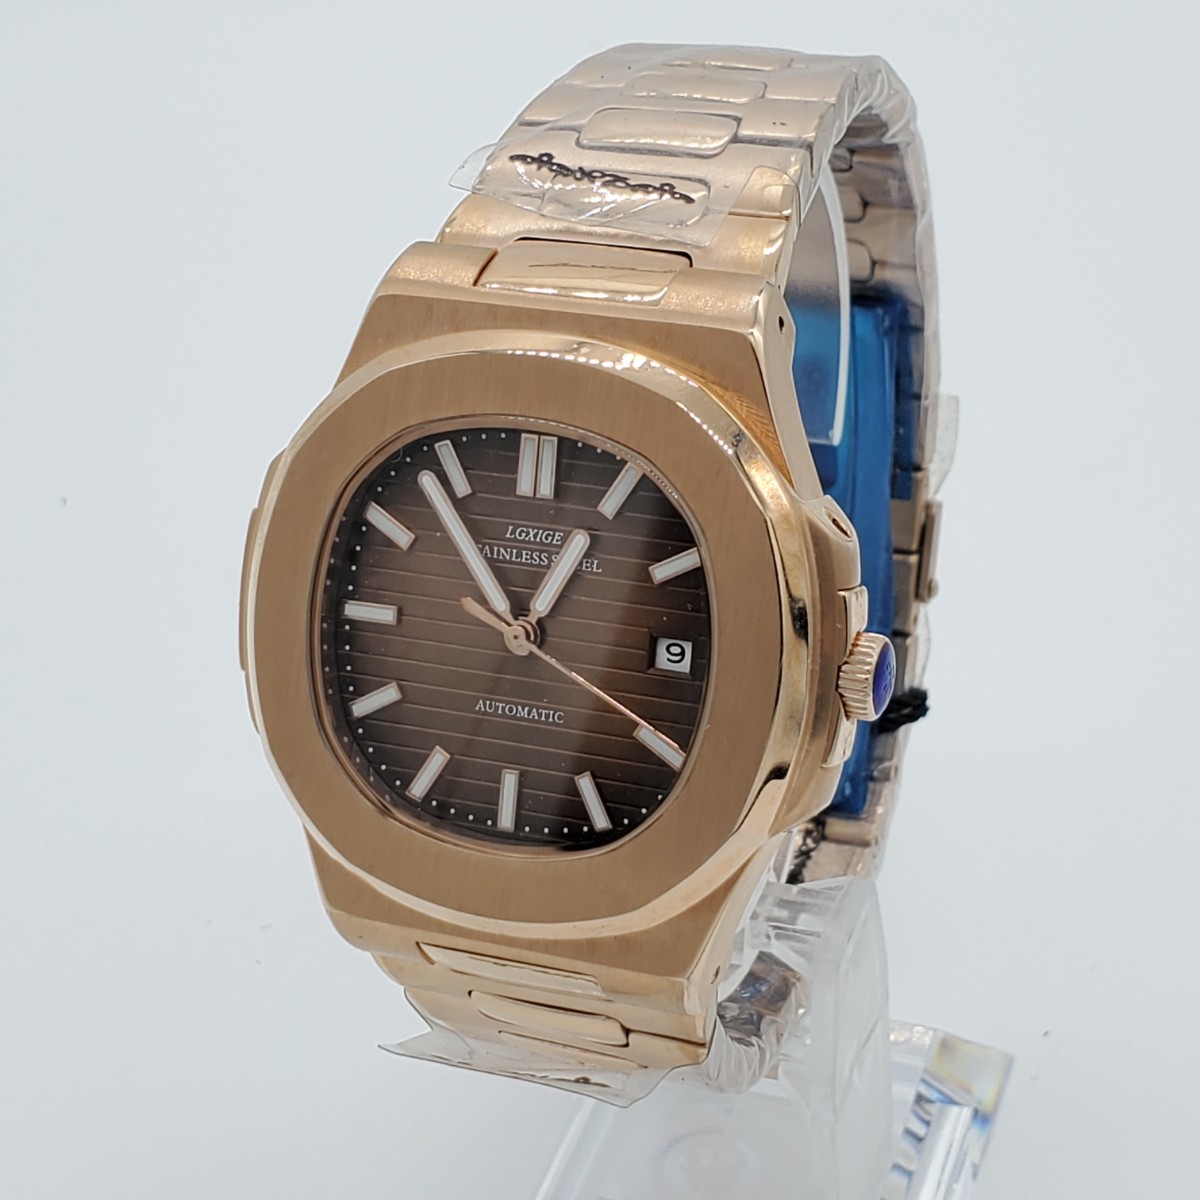 新品 自動巻 LGXIGE PP ノーチラス オマージュウォッチ ゴールド シースルーバック 裏スケ メンズ腕時計 機械式